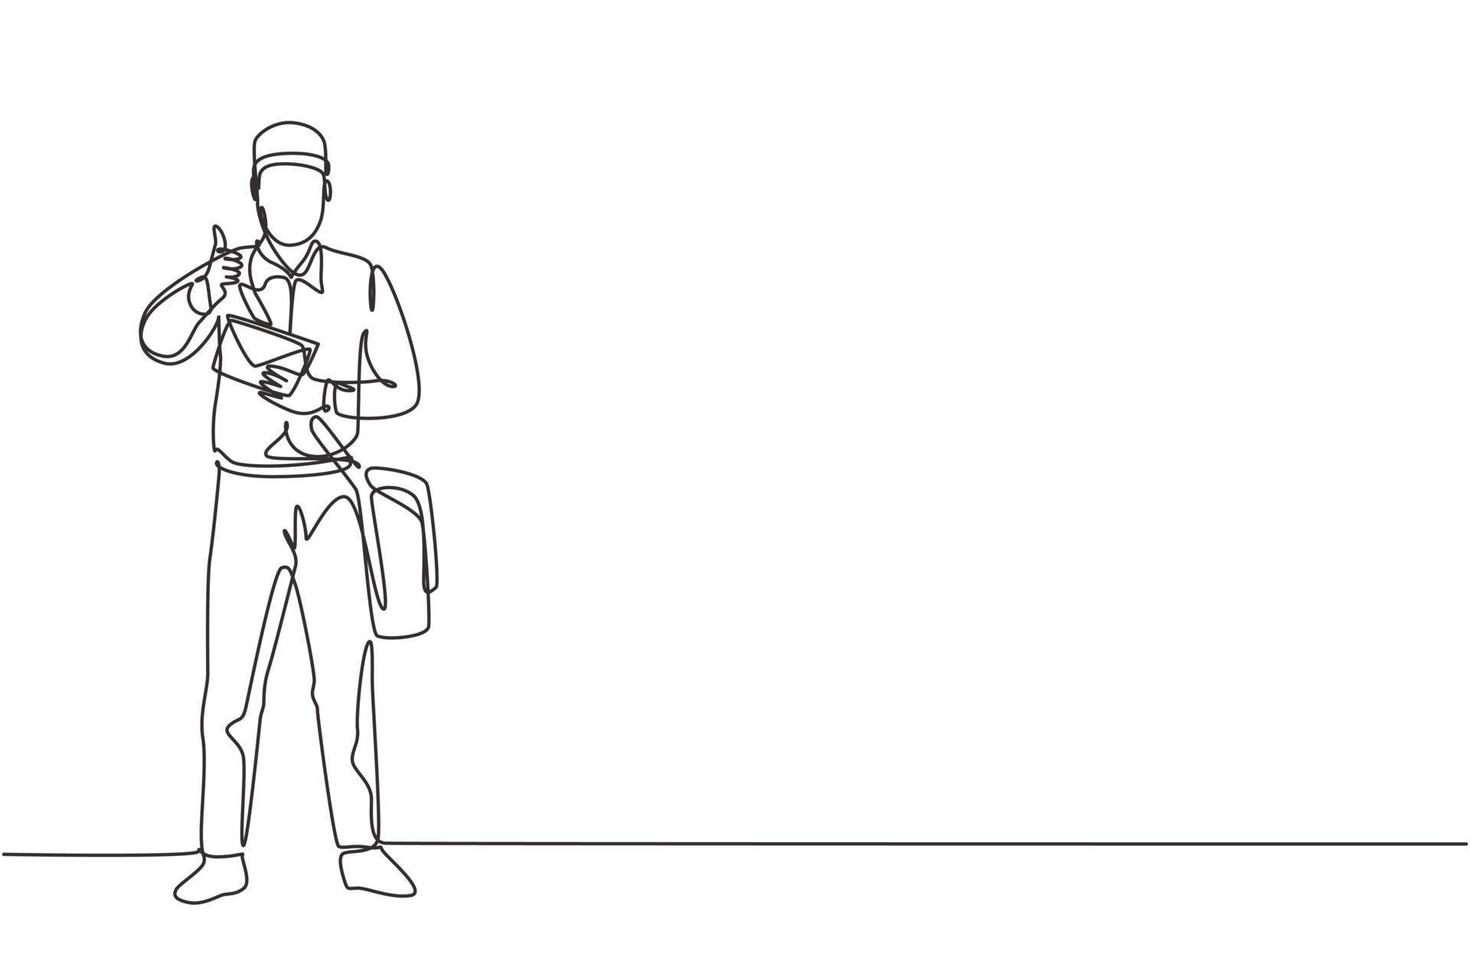 dibujo de una sola línea del cartero de pie con un sombrero, bolso, uniforme, sosteniendo un sobre y con un gesto de pulgar hacia arriba entregando el correo a la dirección de su casa. Ilustración gráfica de diseño de dibujo de línea continua. vector